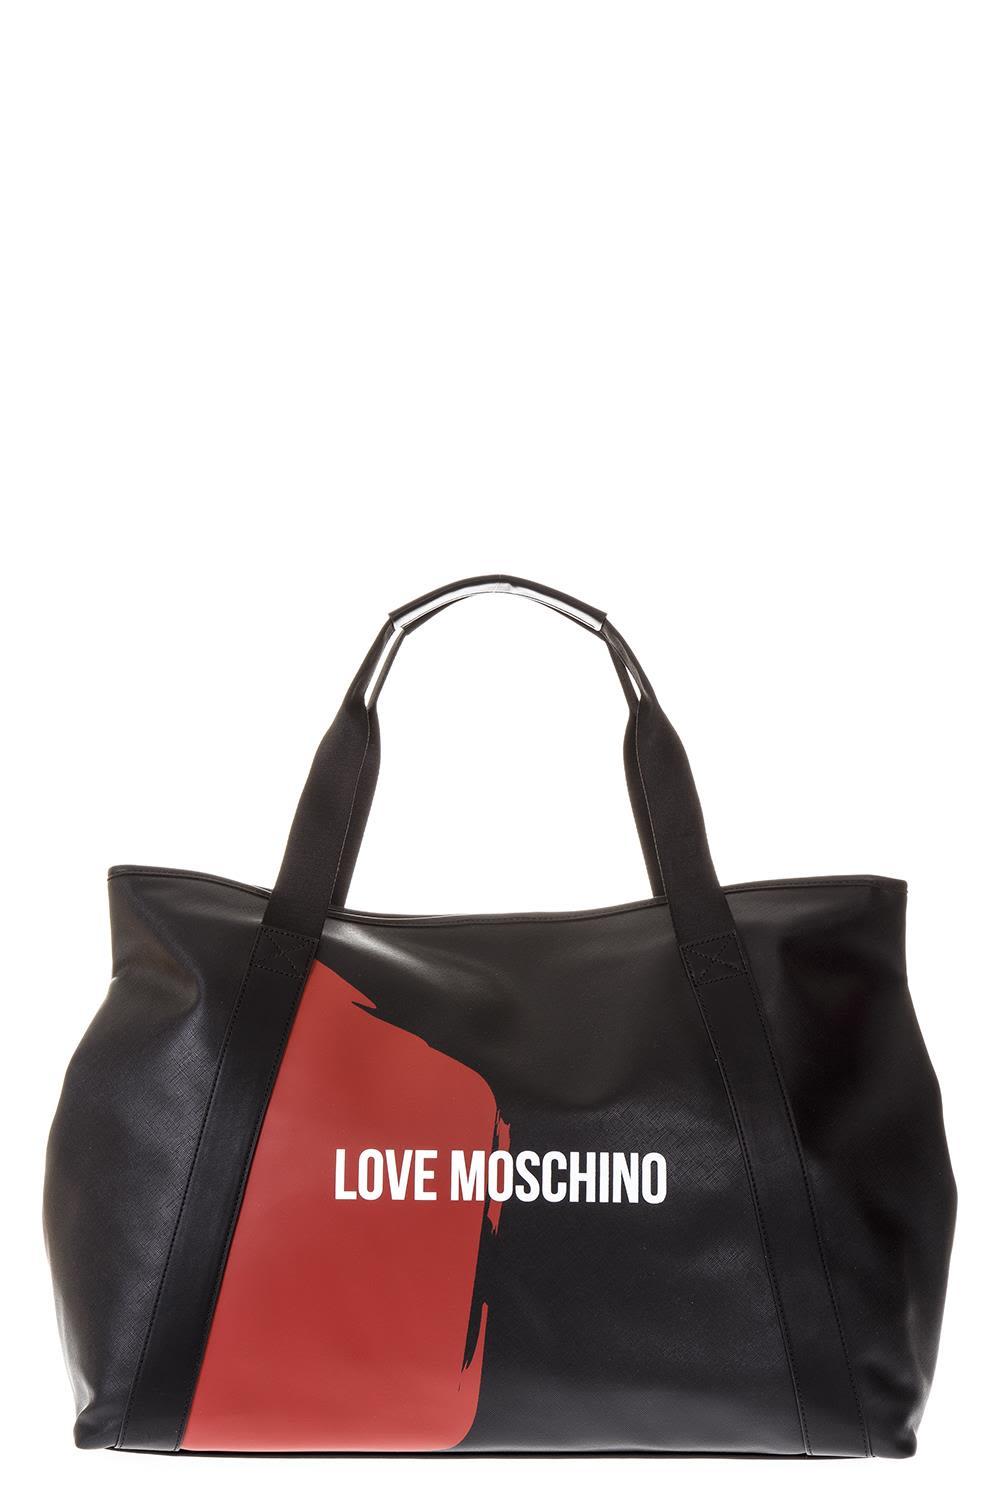 love moschino shopper sale